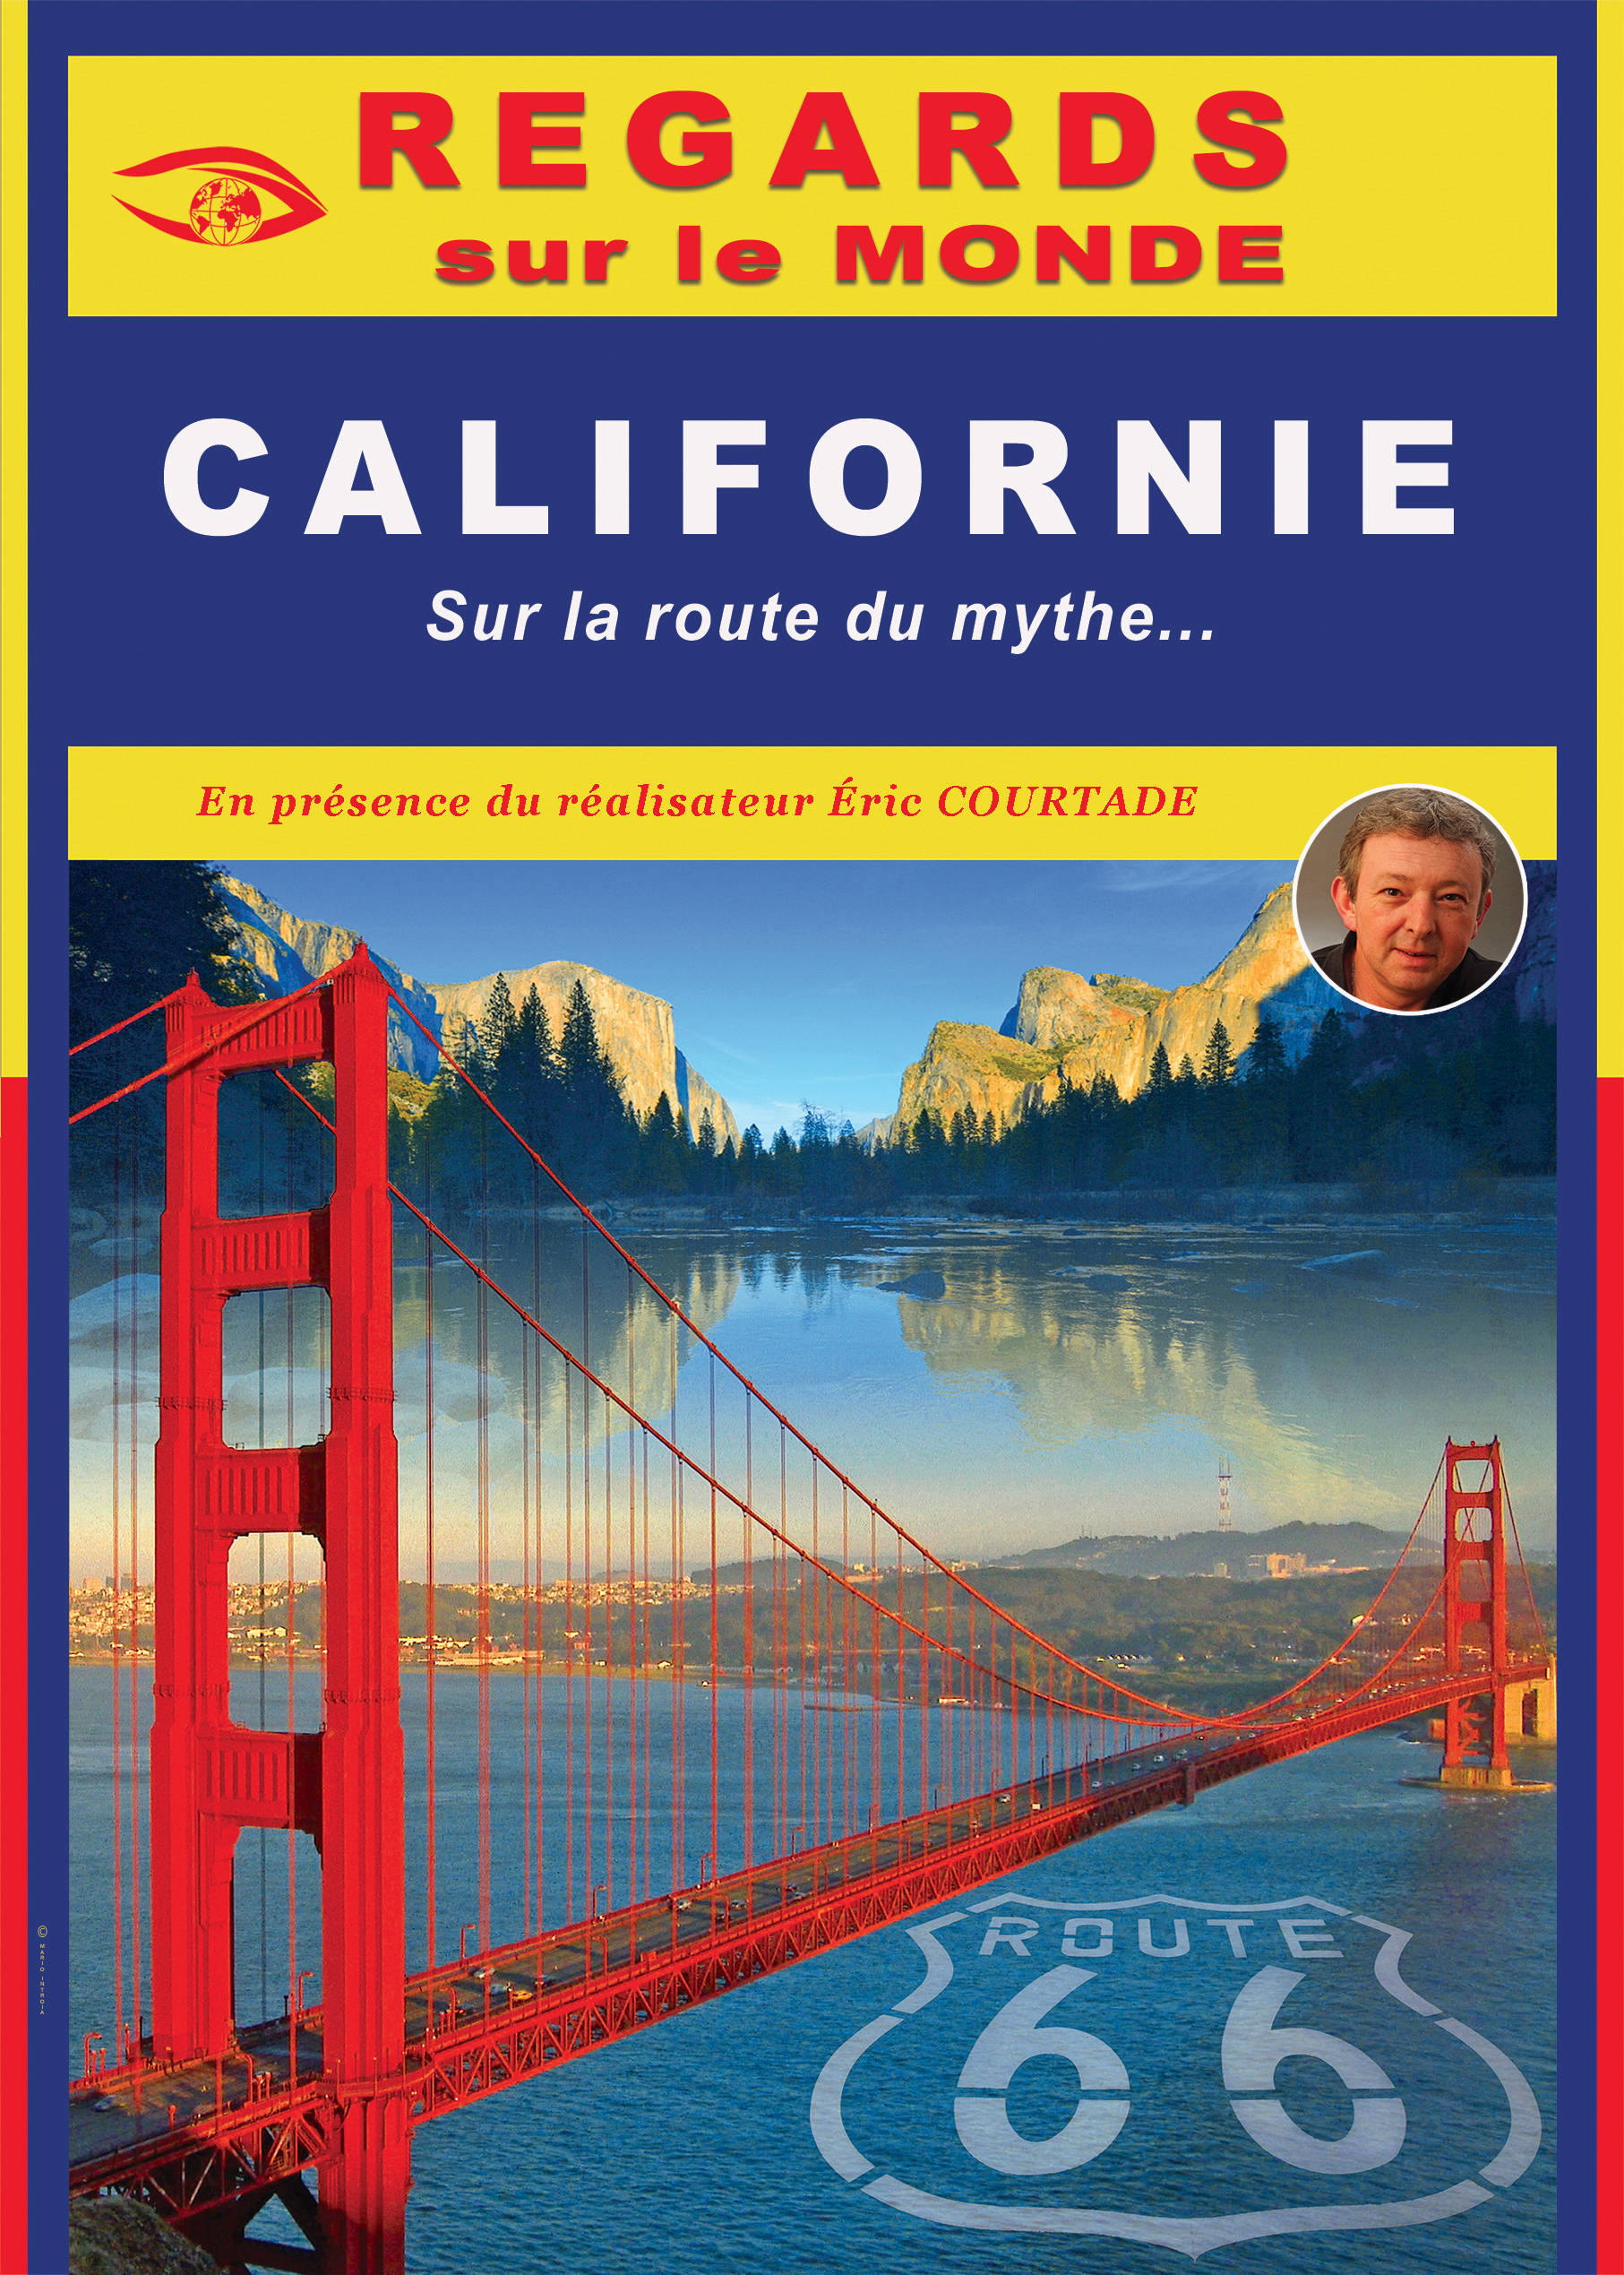 CALIFORNIE, sur la route du mythe - Film d'Eric Courtade